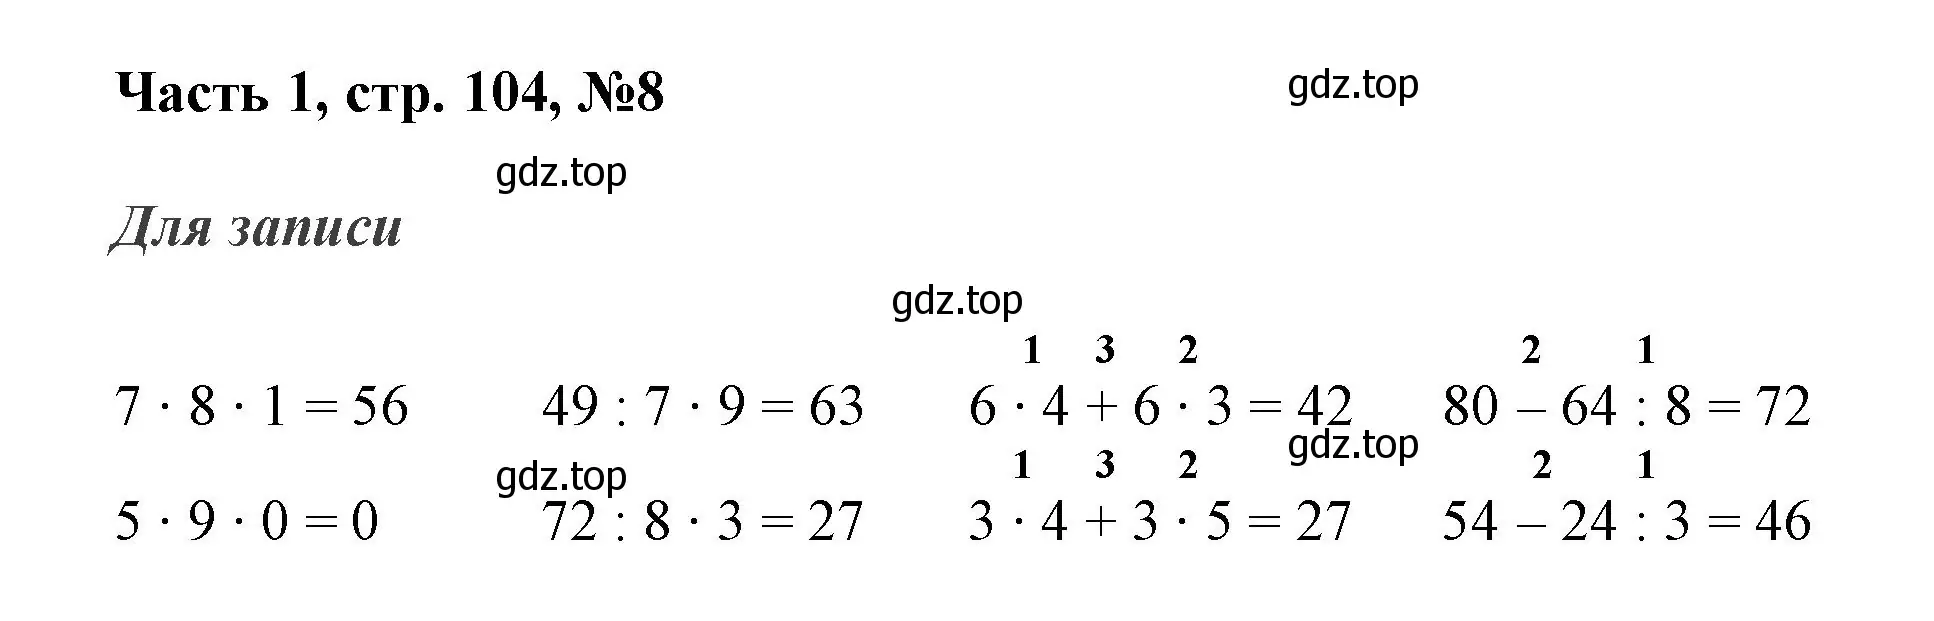 Решение номер 8 (страница 104) гдз по математике 3 класс Моро, Бантова, учебник 1 часть